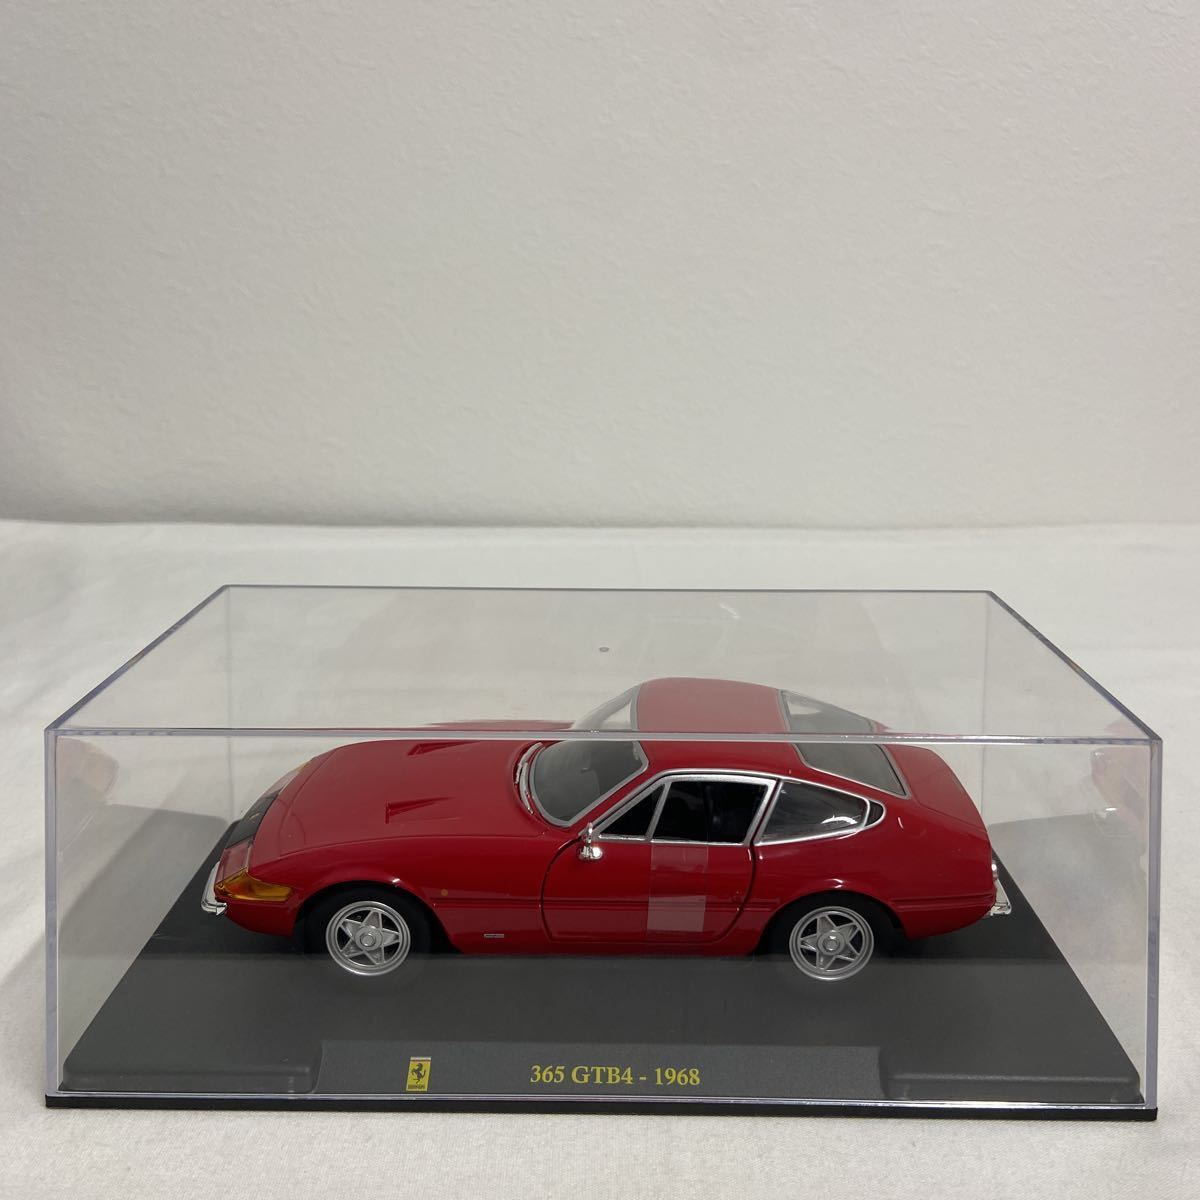 デアゴスティーニ レ・グランディ・フェラーリコレクション 1/24 Ferrari 365GTB4 Red 1968年 完成品 スーパーカー ミニカー モデルカー_画像2